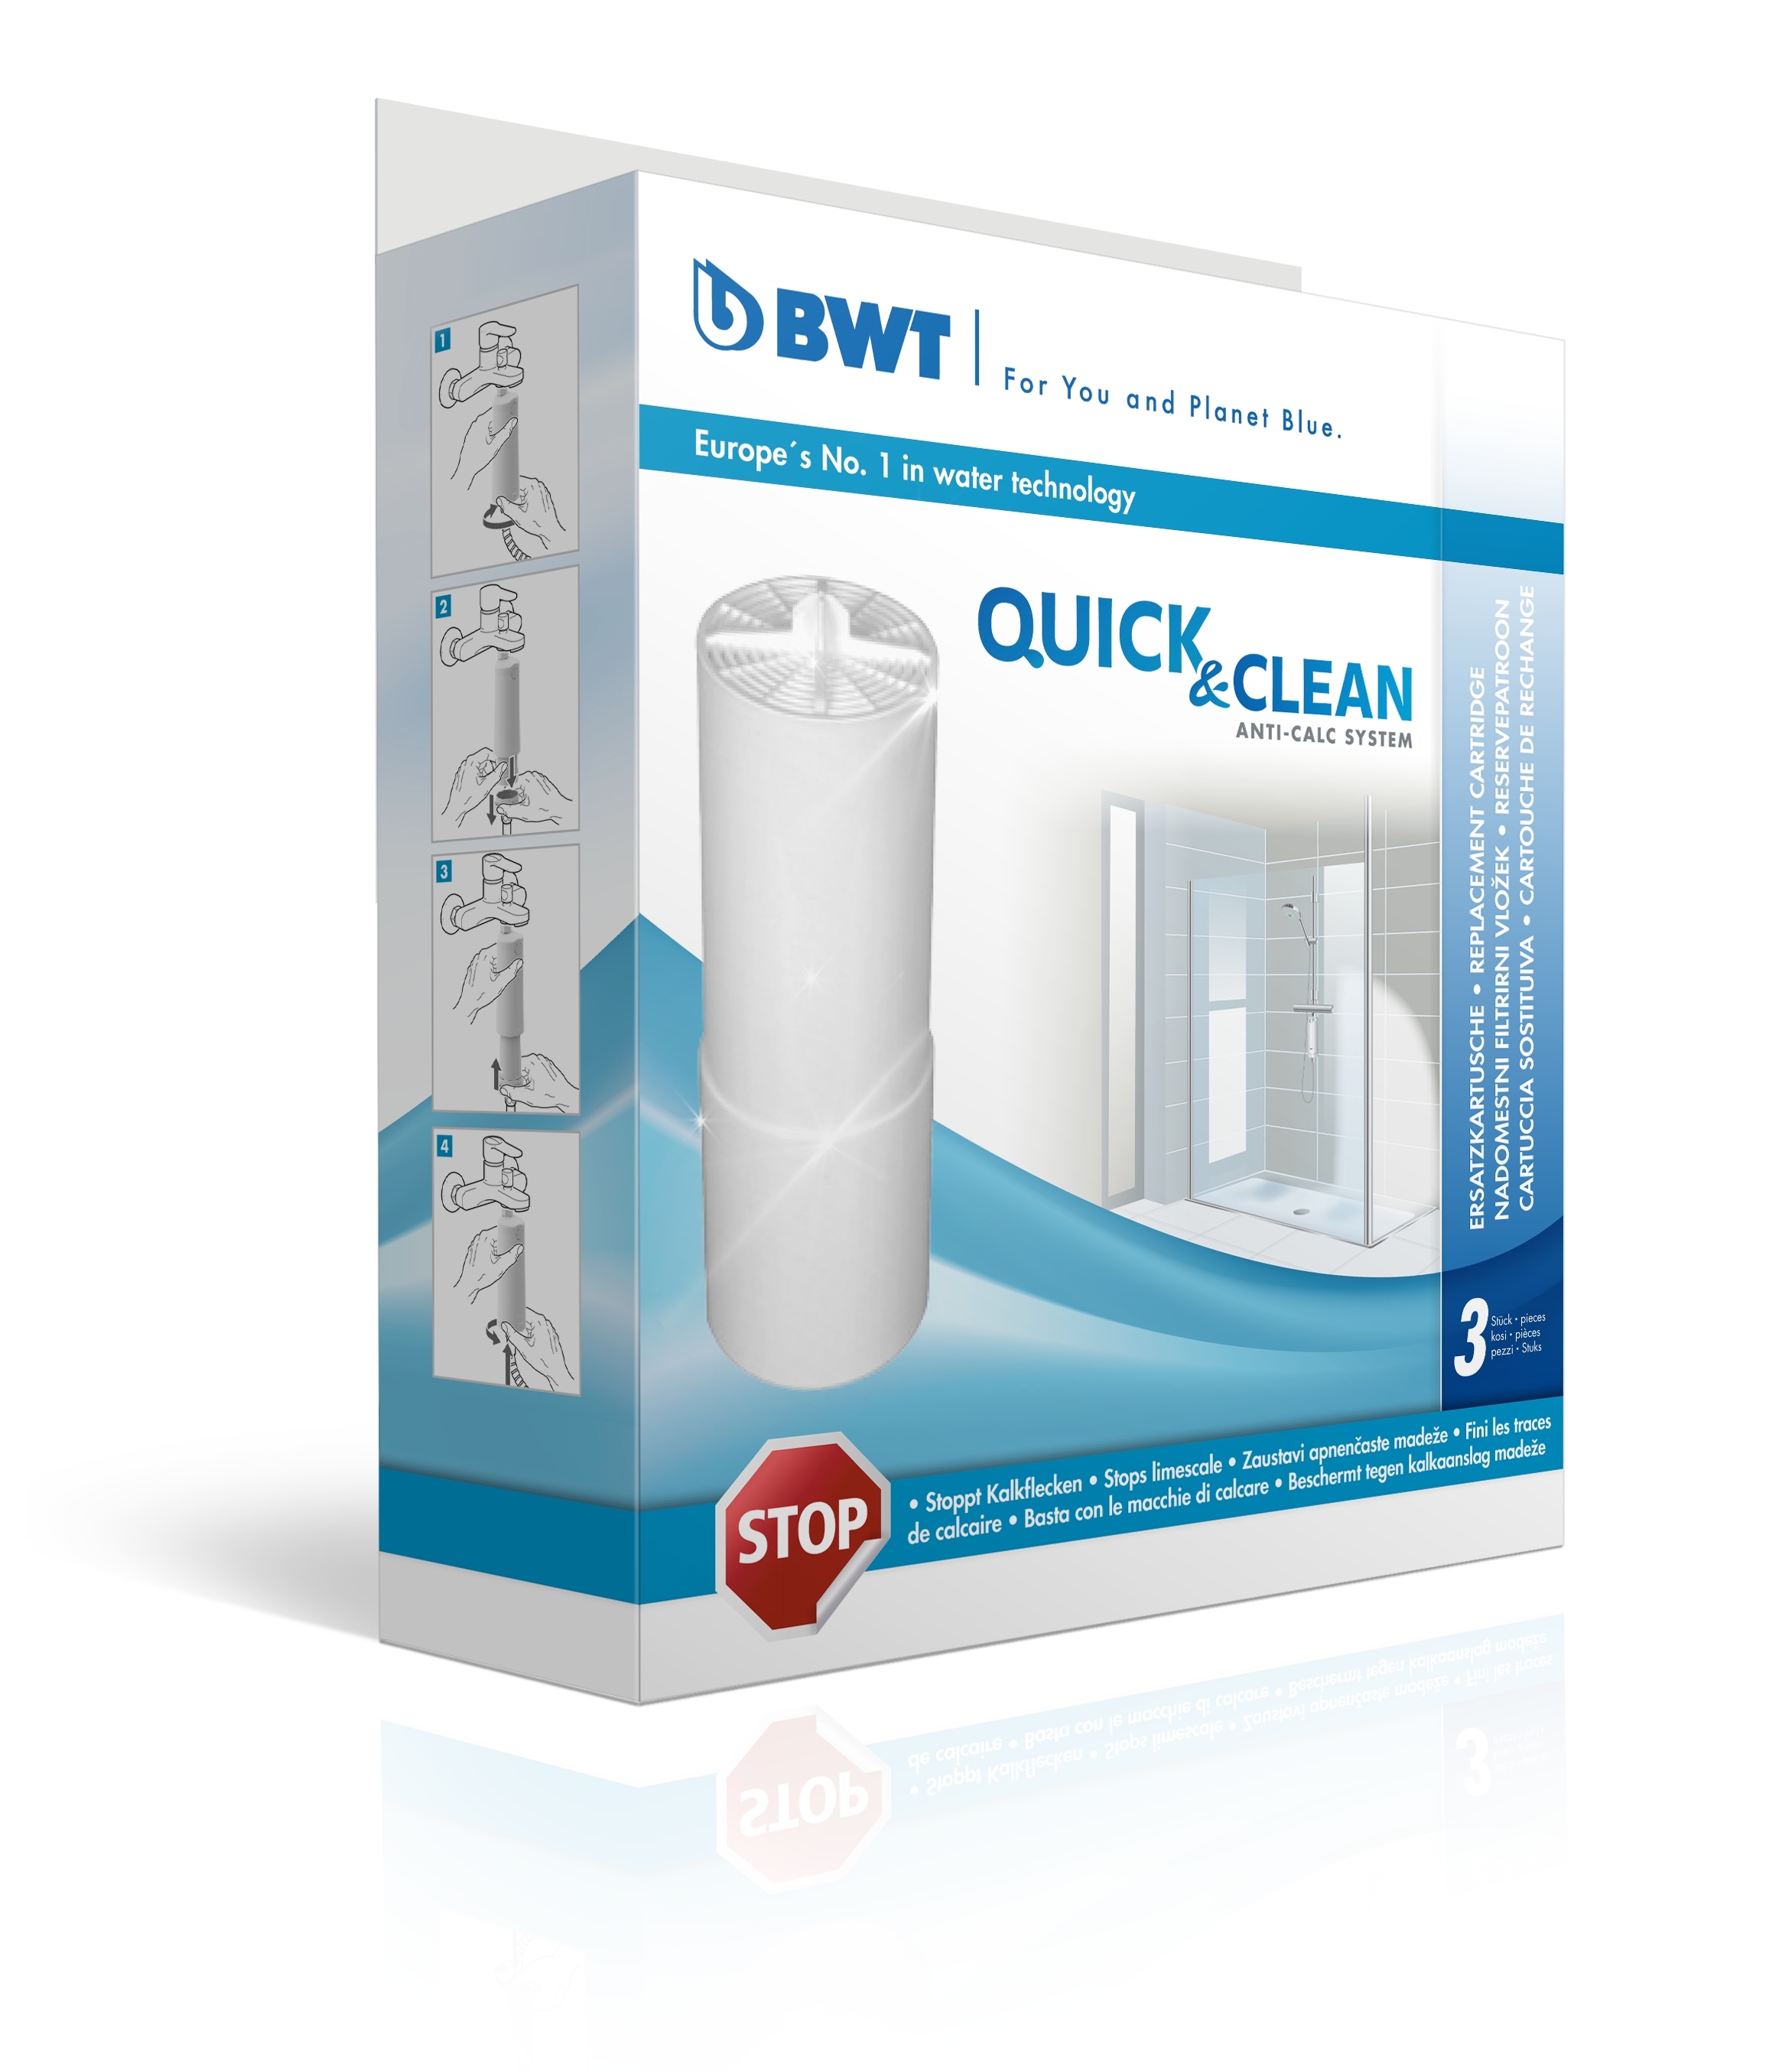 BWT Kalk- und Wasserfilter »Quick & Clean Antikalk-Filtersystem«